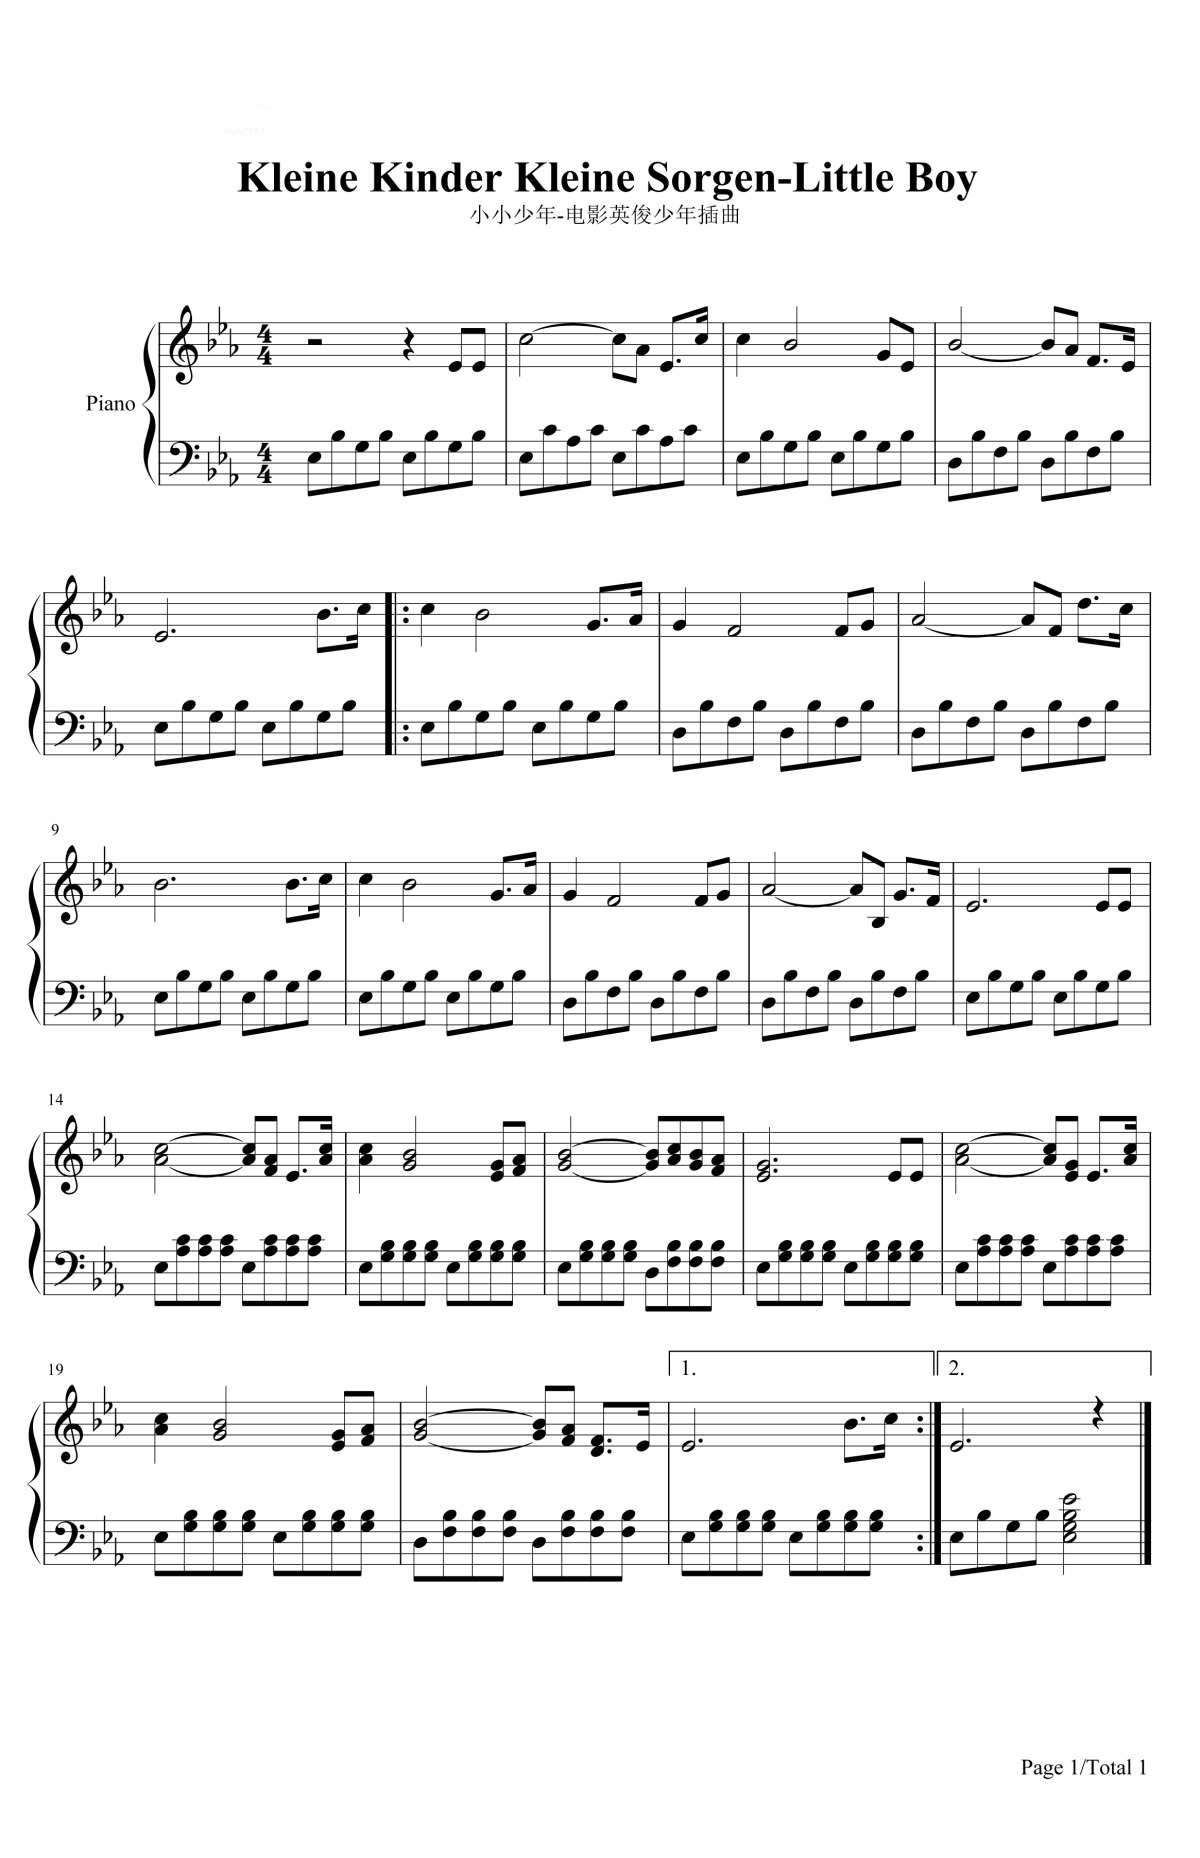 《小小少年》的钢琴谱钢琴曲谱 - 海因切